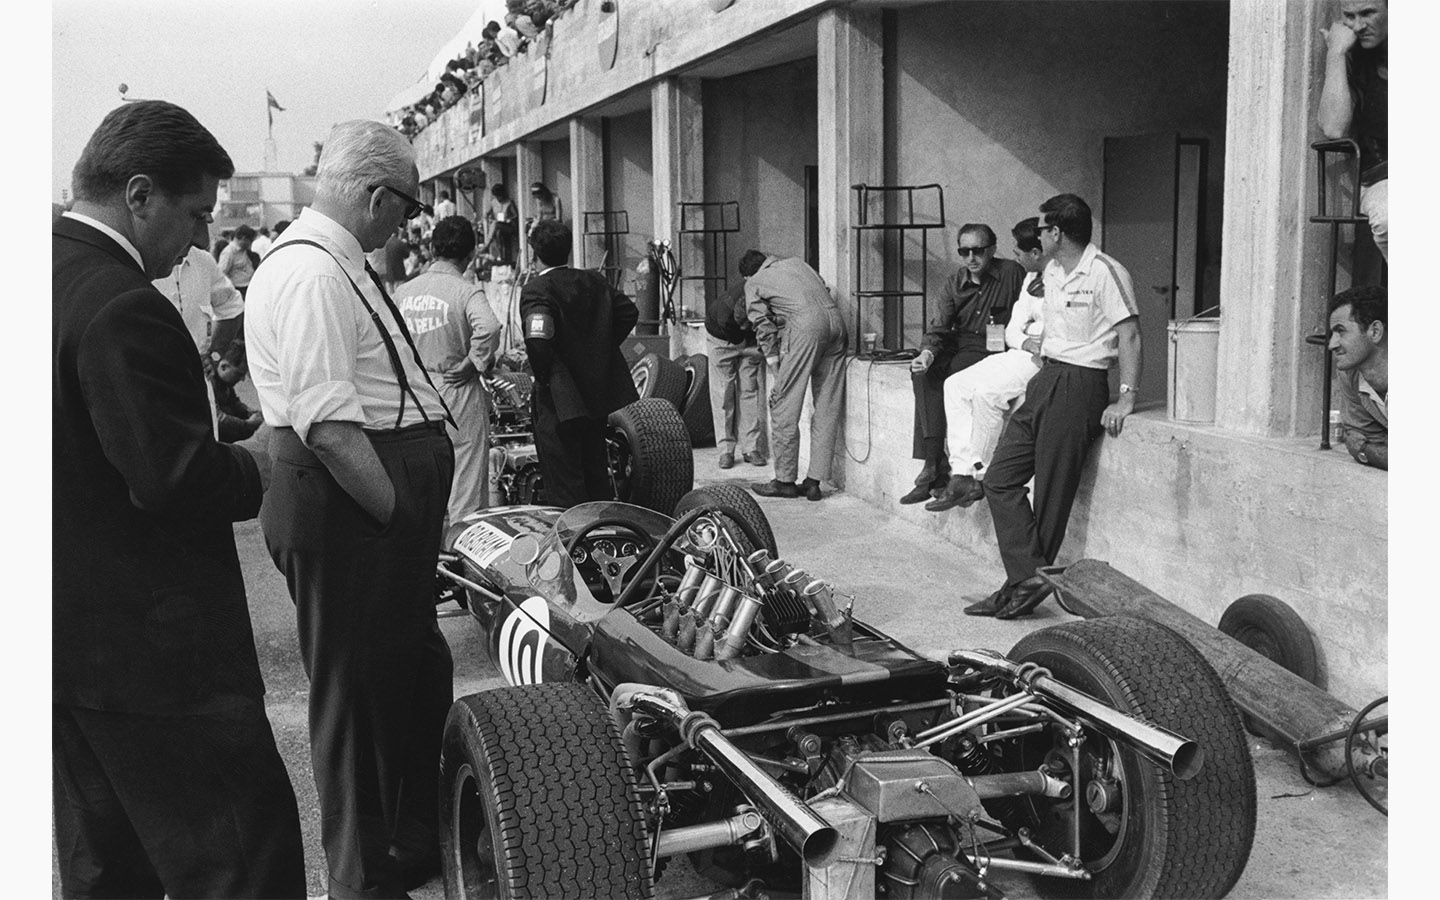 Энцо Феррари смотрит на Brabham-Repco во время Гран-при Италии в Монце, 4 сентября 1966 года